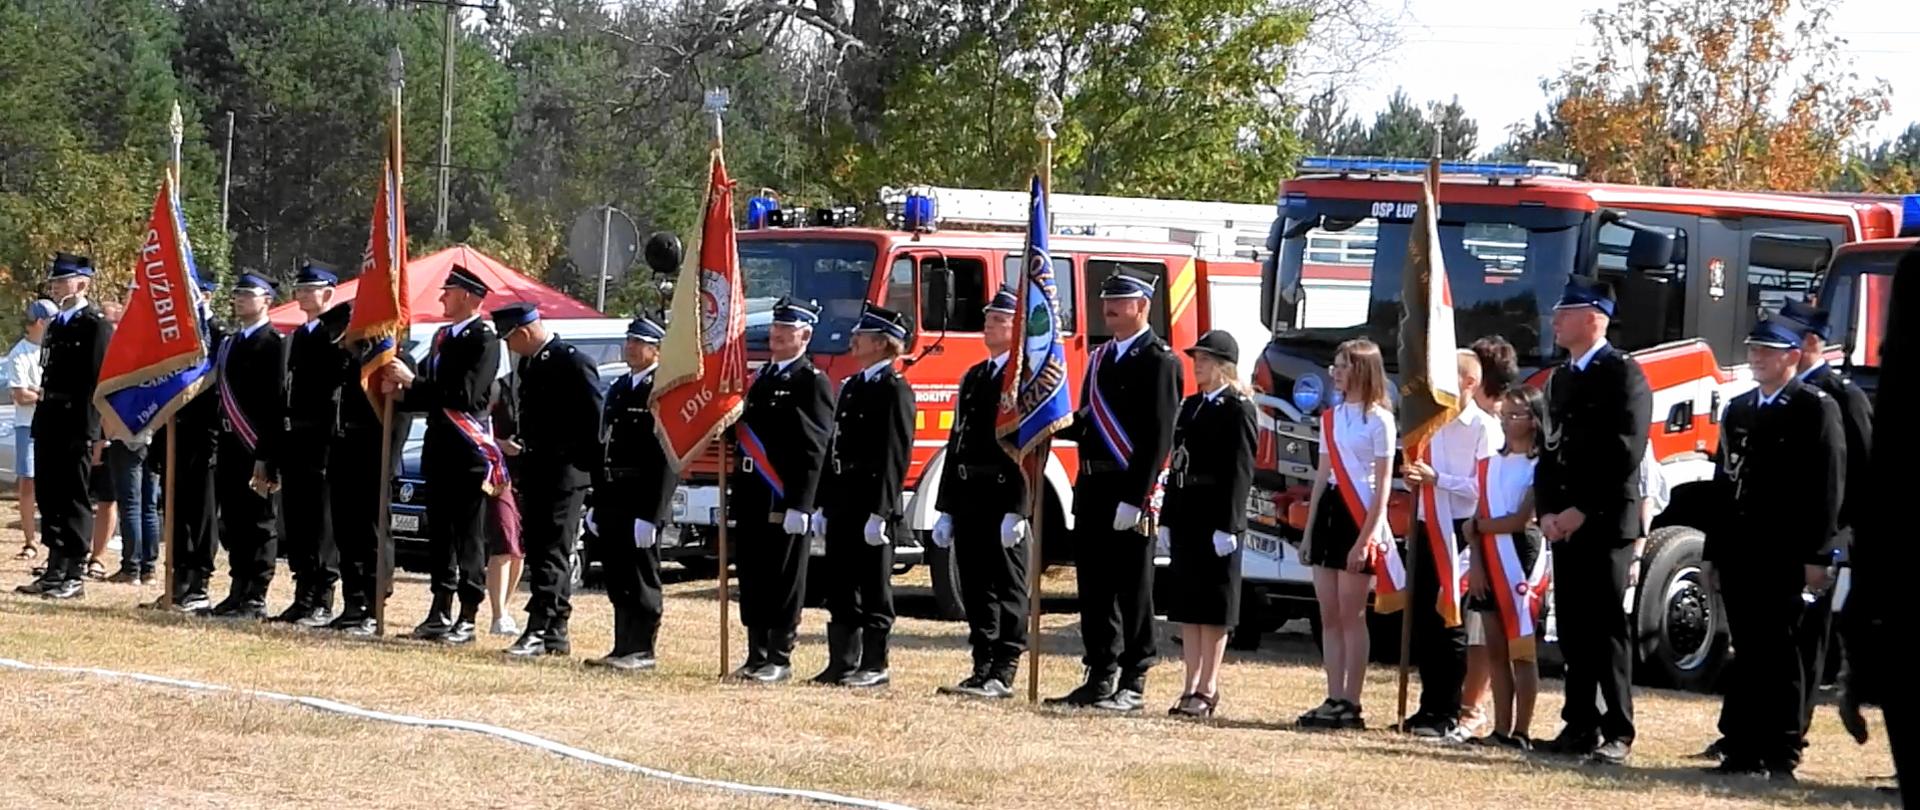 W rzędzie przy wozach strażackich stoją przedstawiciele pięciu pocztów sztandarowych